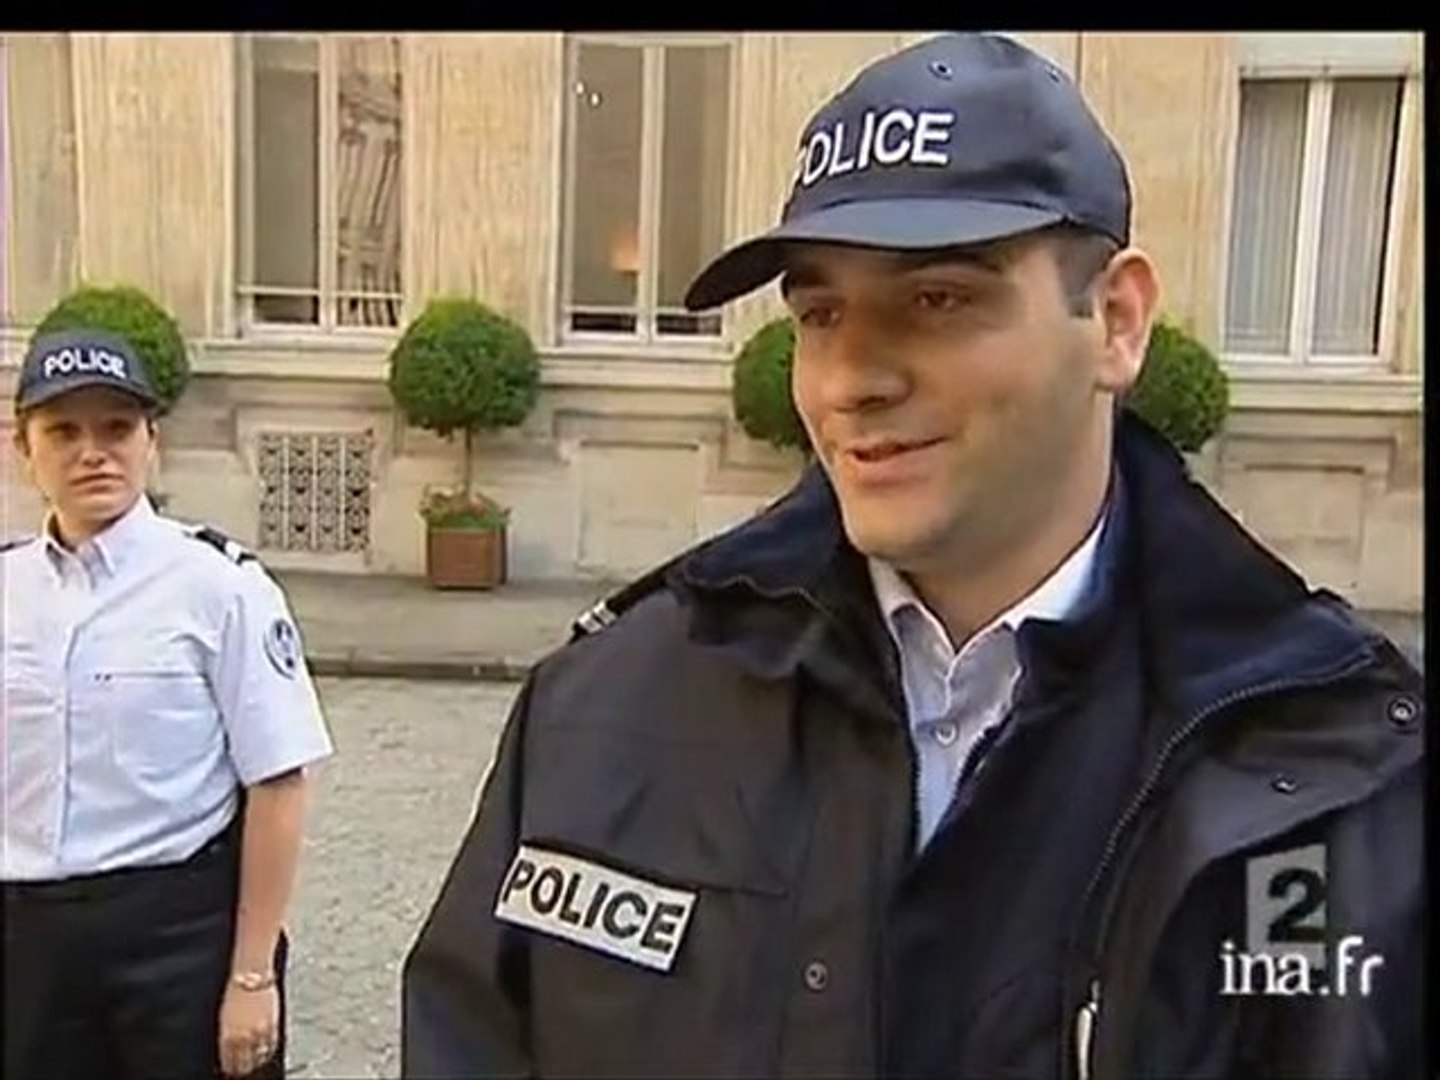 Nouvel uniforme de la Police] - Vidéo Dailymotion